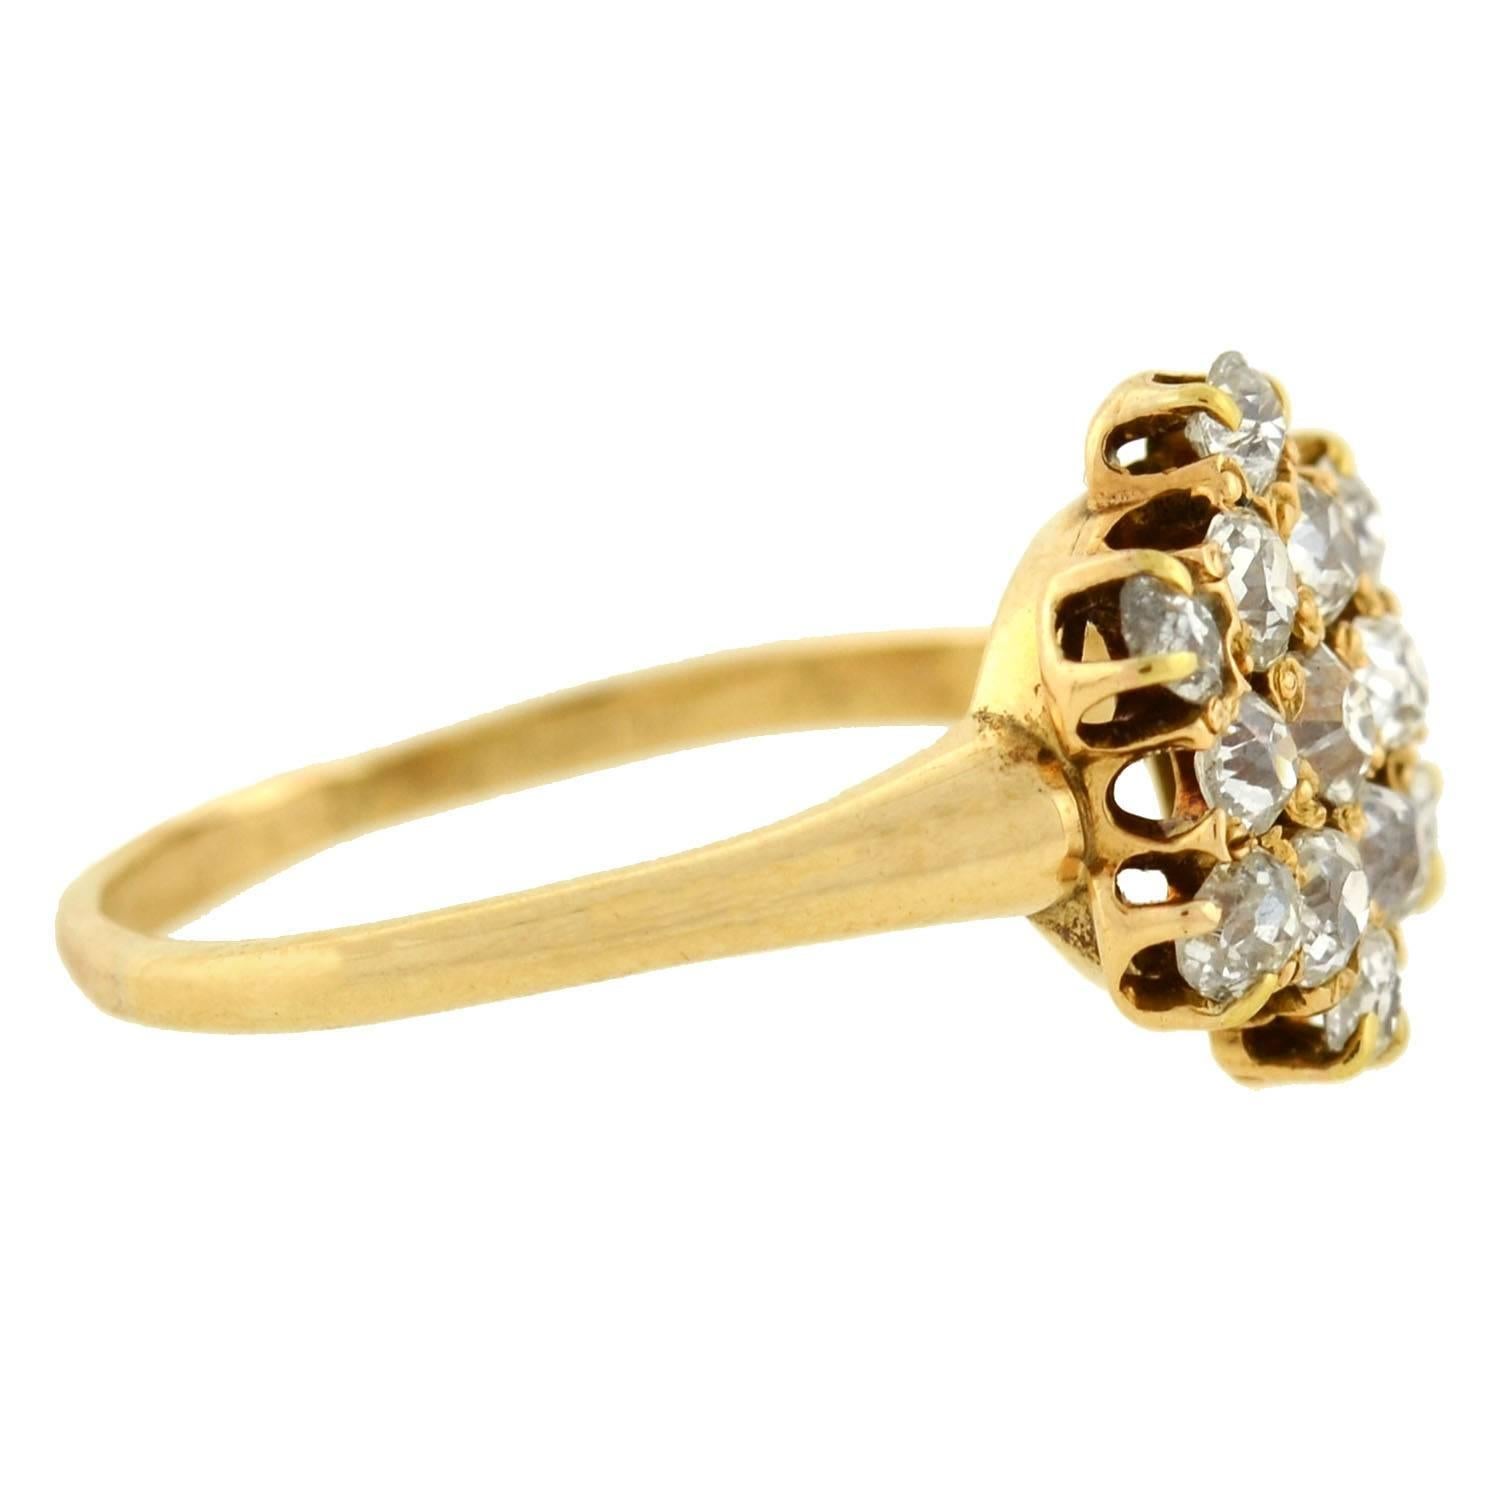 Ein wunderschöner Diamantring aus der viktorianischen Ära (ca. 1880)! Dieser bezaubernde Ring ist aus 14-karätigem Gelbgold gefertigt und hat ein reizendes und feminines Design. In der Mitte befindet sich ein Cluster aus zarten Diamanten im